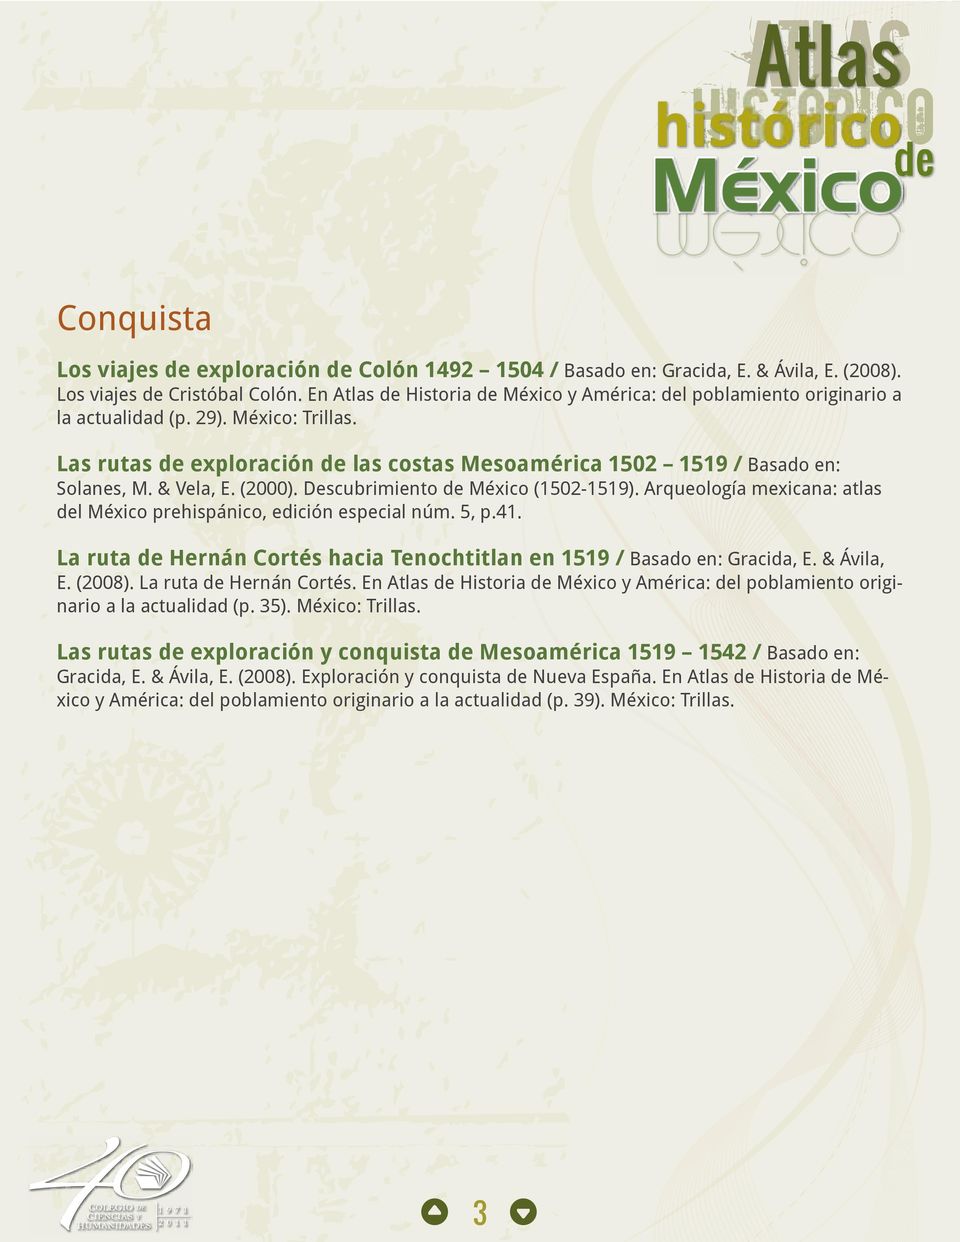 & Vela, E. (2000). Descubrimiento de México (1502-1519). Arqueología mexicana: atlas del México prehispánico, edición especial núm. 5, p.41.